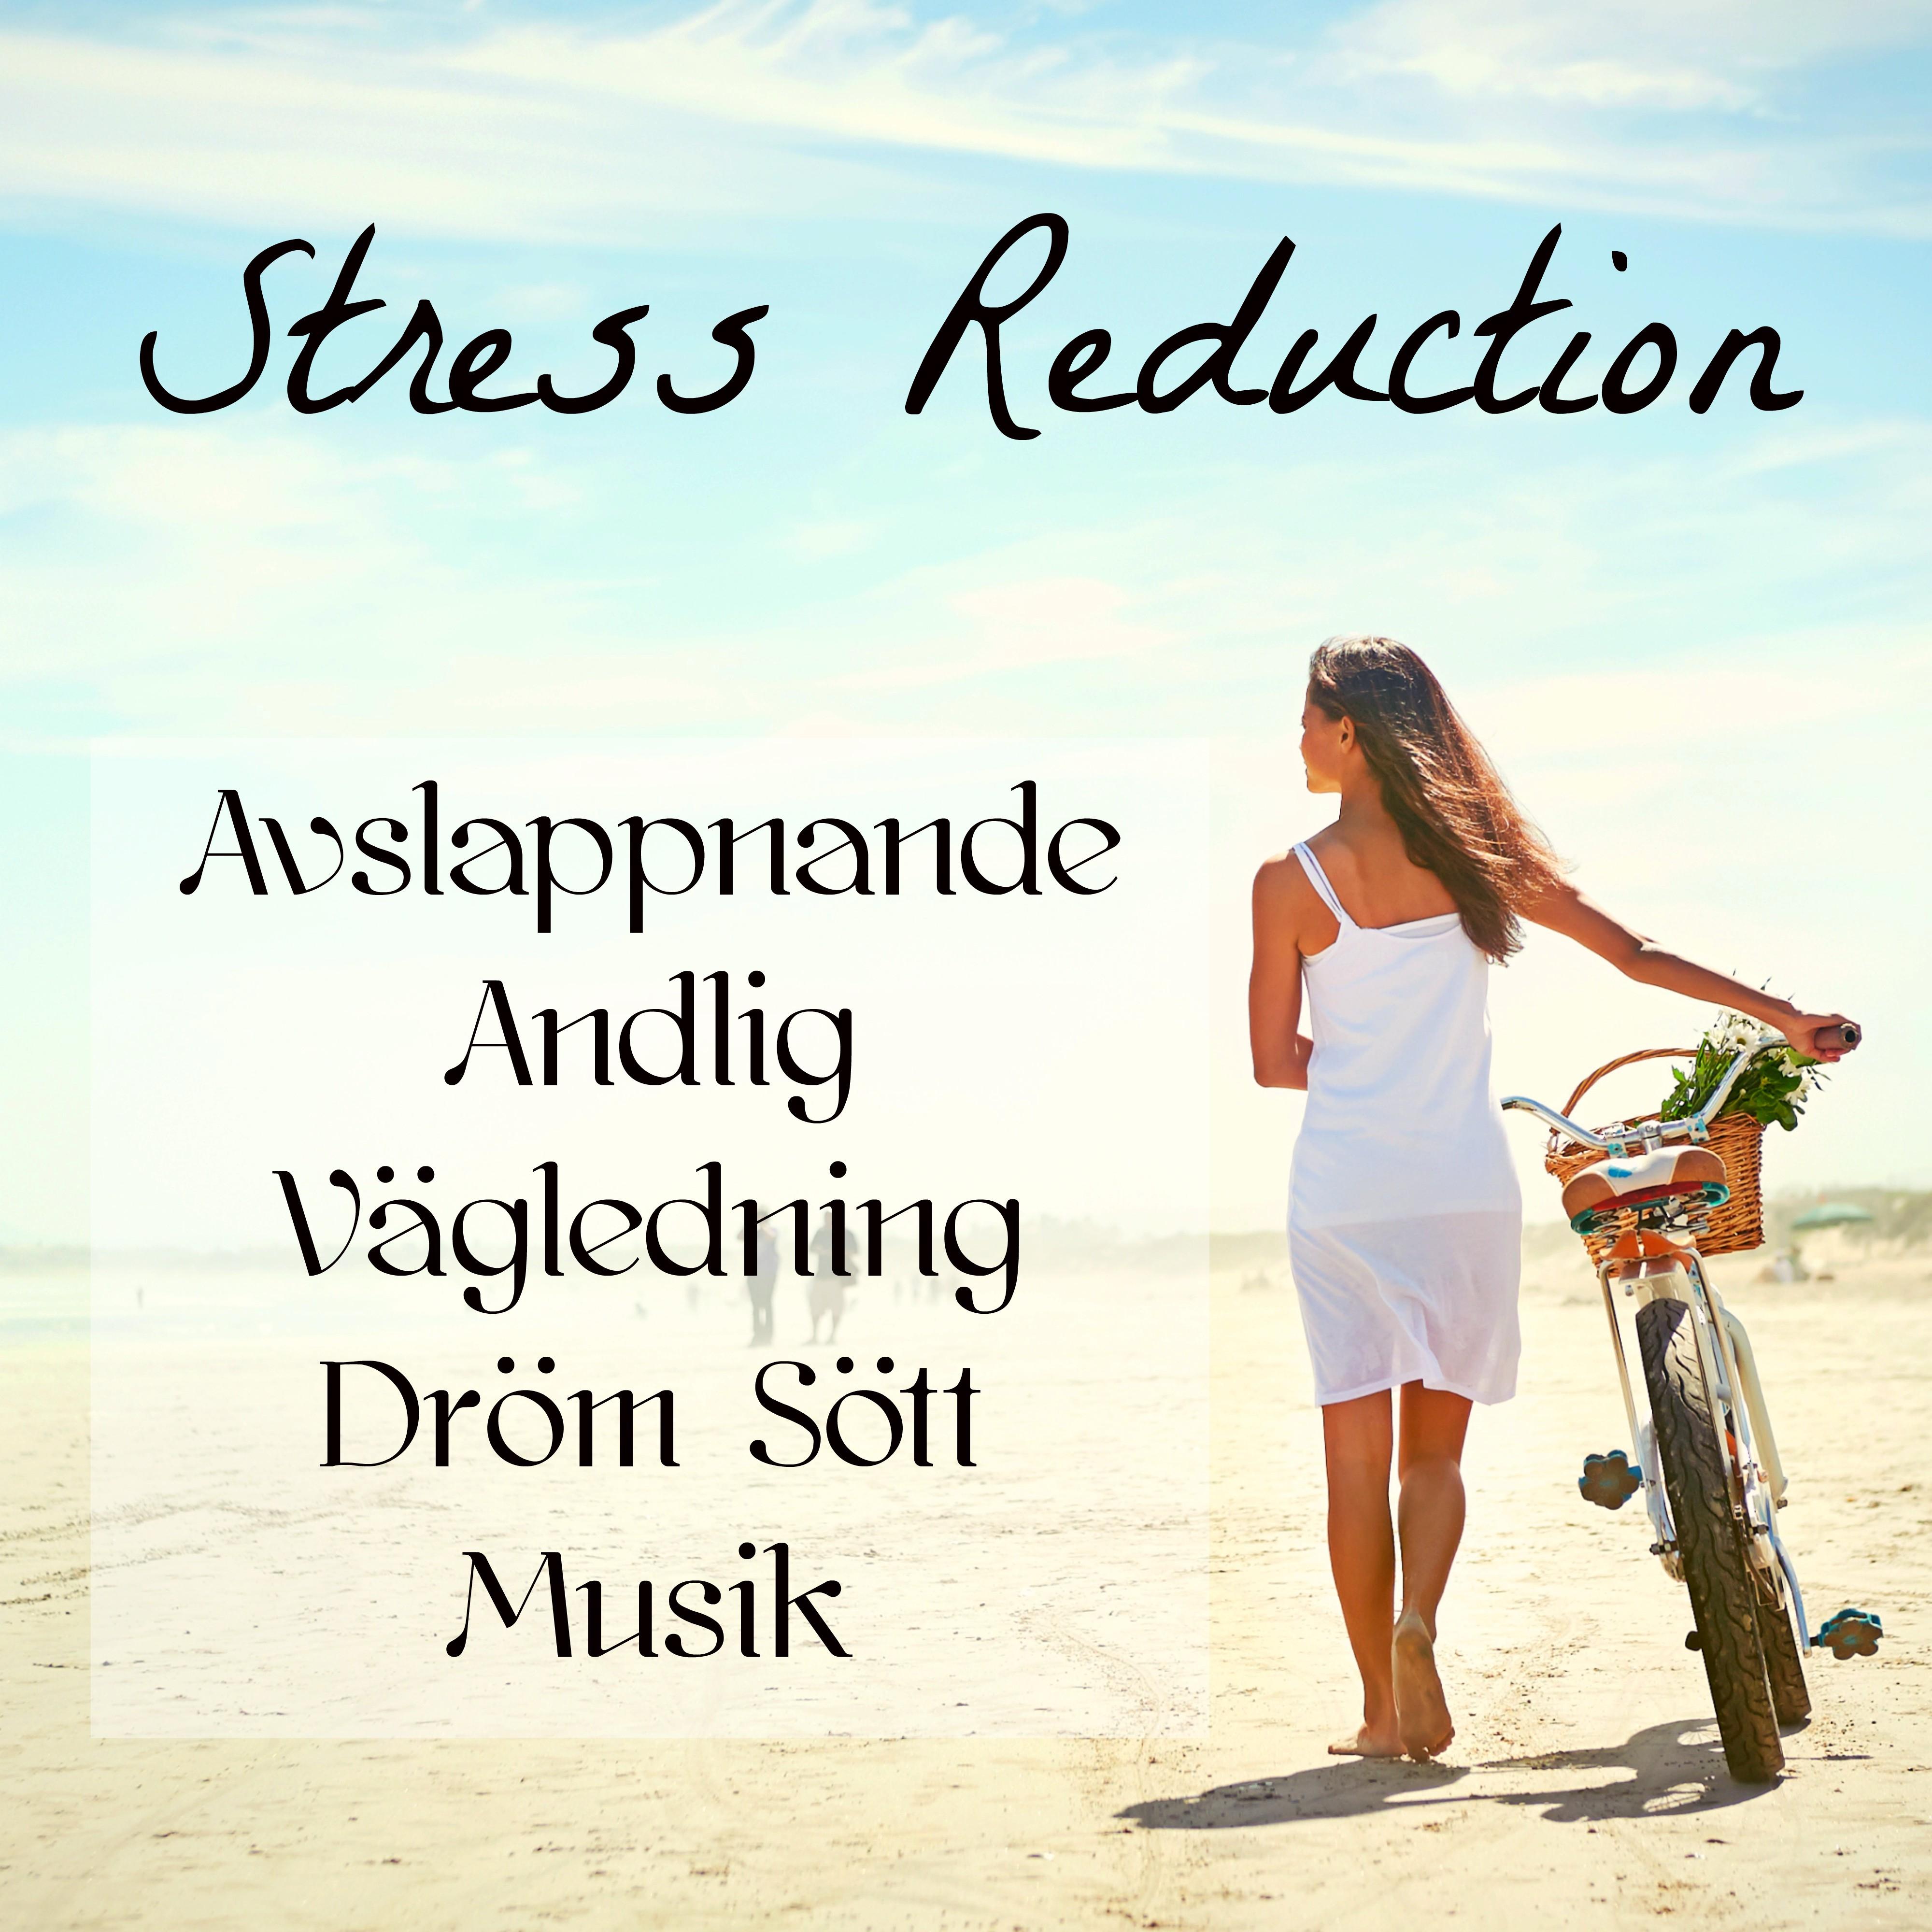 Stress Reduction - Avslappnande Andlig Vägledning Dröm Sött Musik för Ljudterapi Aterfödelse och Djup Meditation